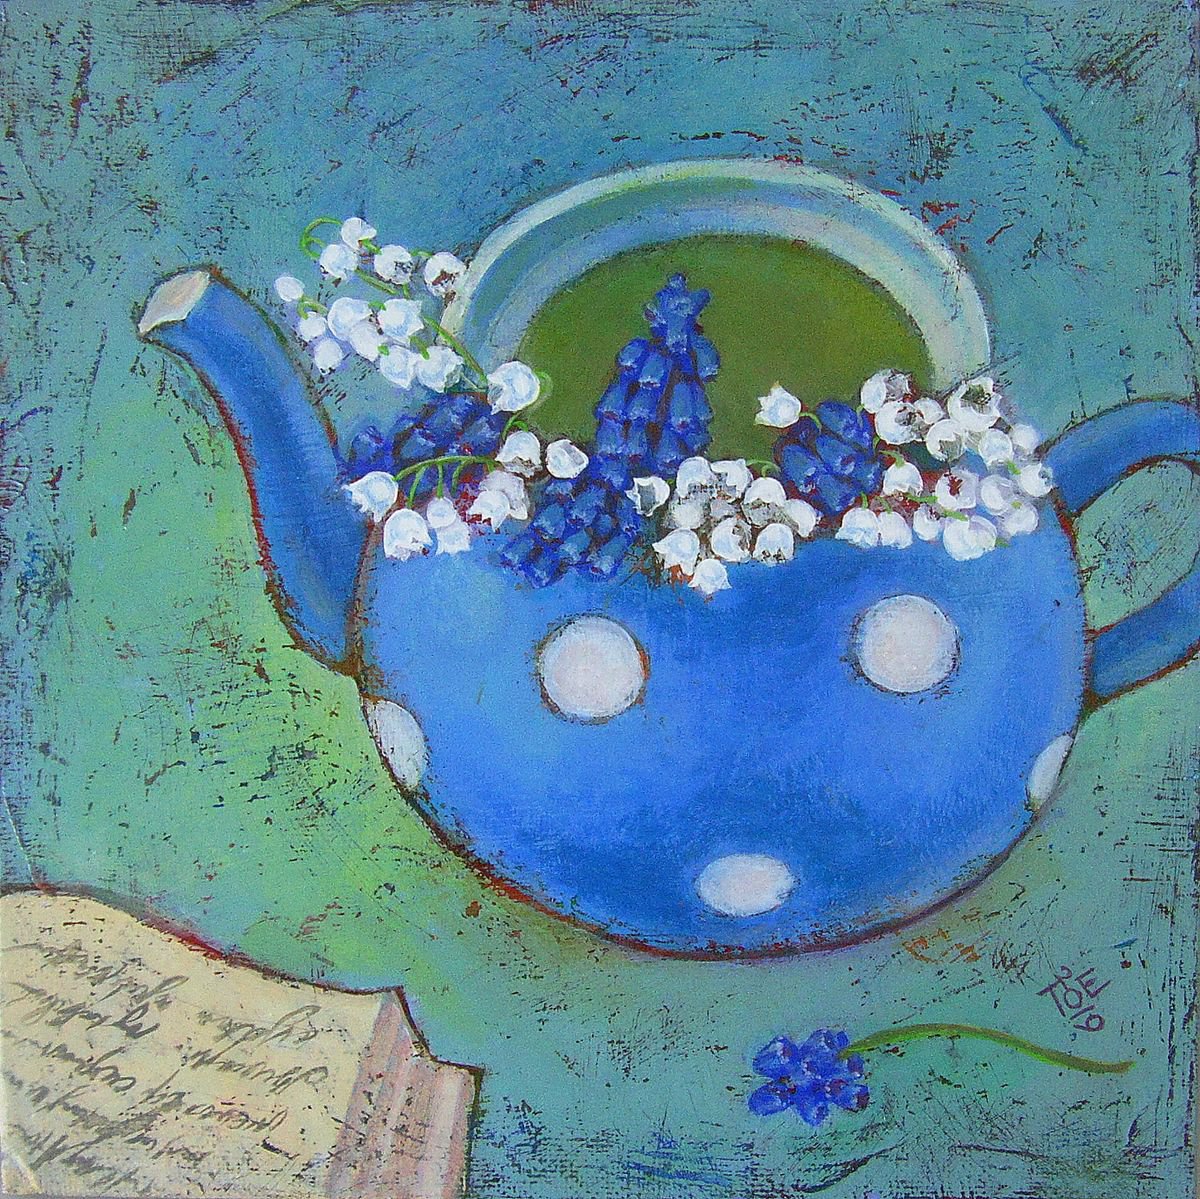 Still life with may-lily by Olga Todorovska